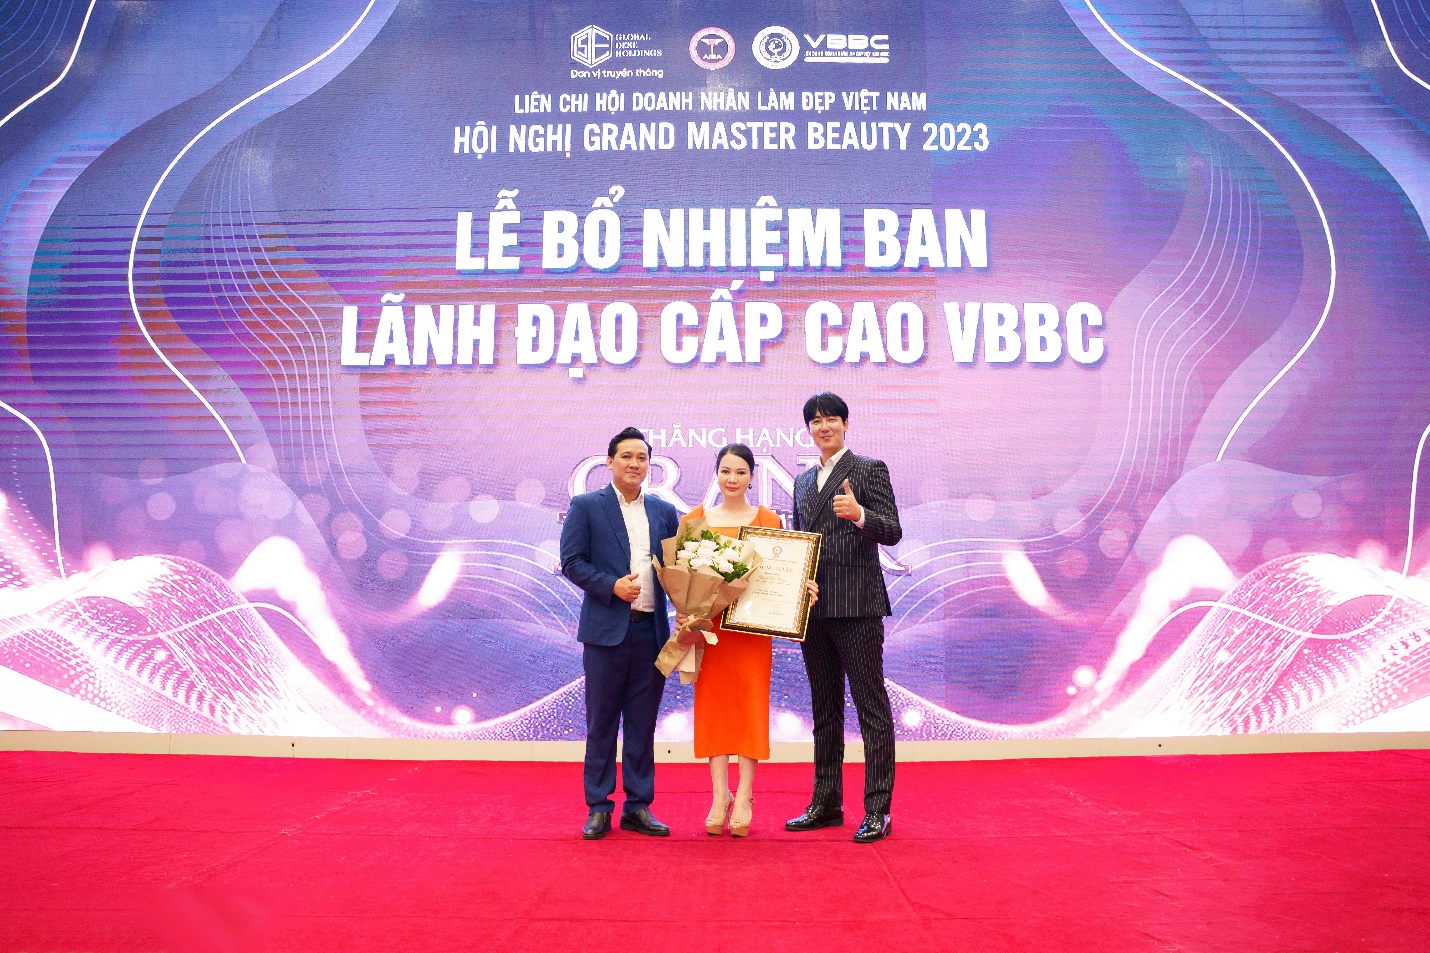 Doanh nhân Phạm Thu Thủy đón nhận vai trò mới trong sự nghiệp phát triển dưỡng sinh đông y công nghệ cao - 4